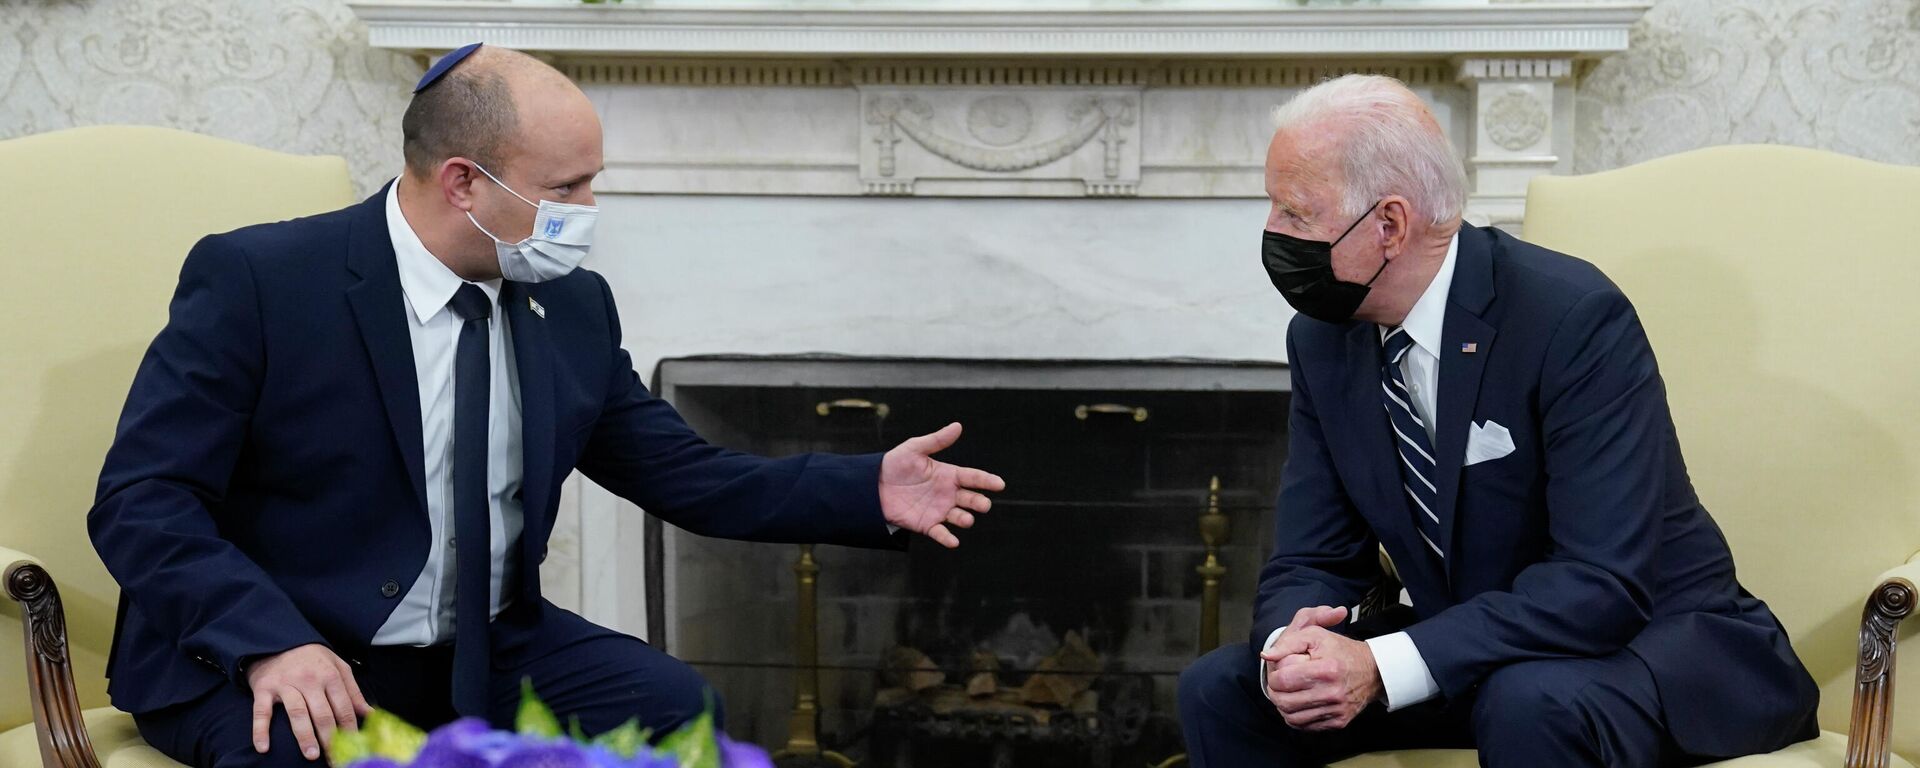 President Joe Biden meets with Israeli Prime Minister Naftali Bennett in the Oval Office of the White House, Friday, Aug. 27, 2021, in Washington. - Sputnik International, 1920, 05.07.2022